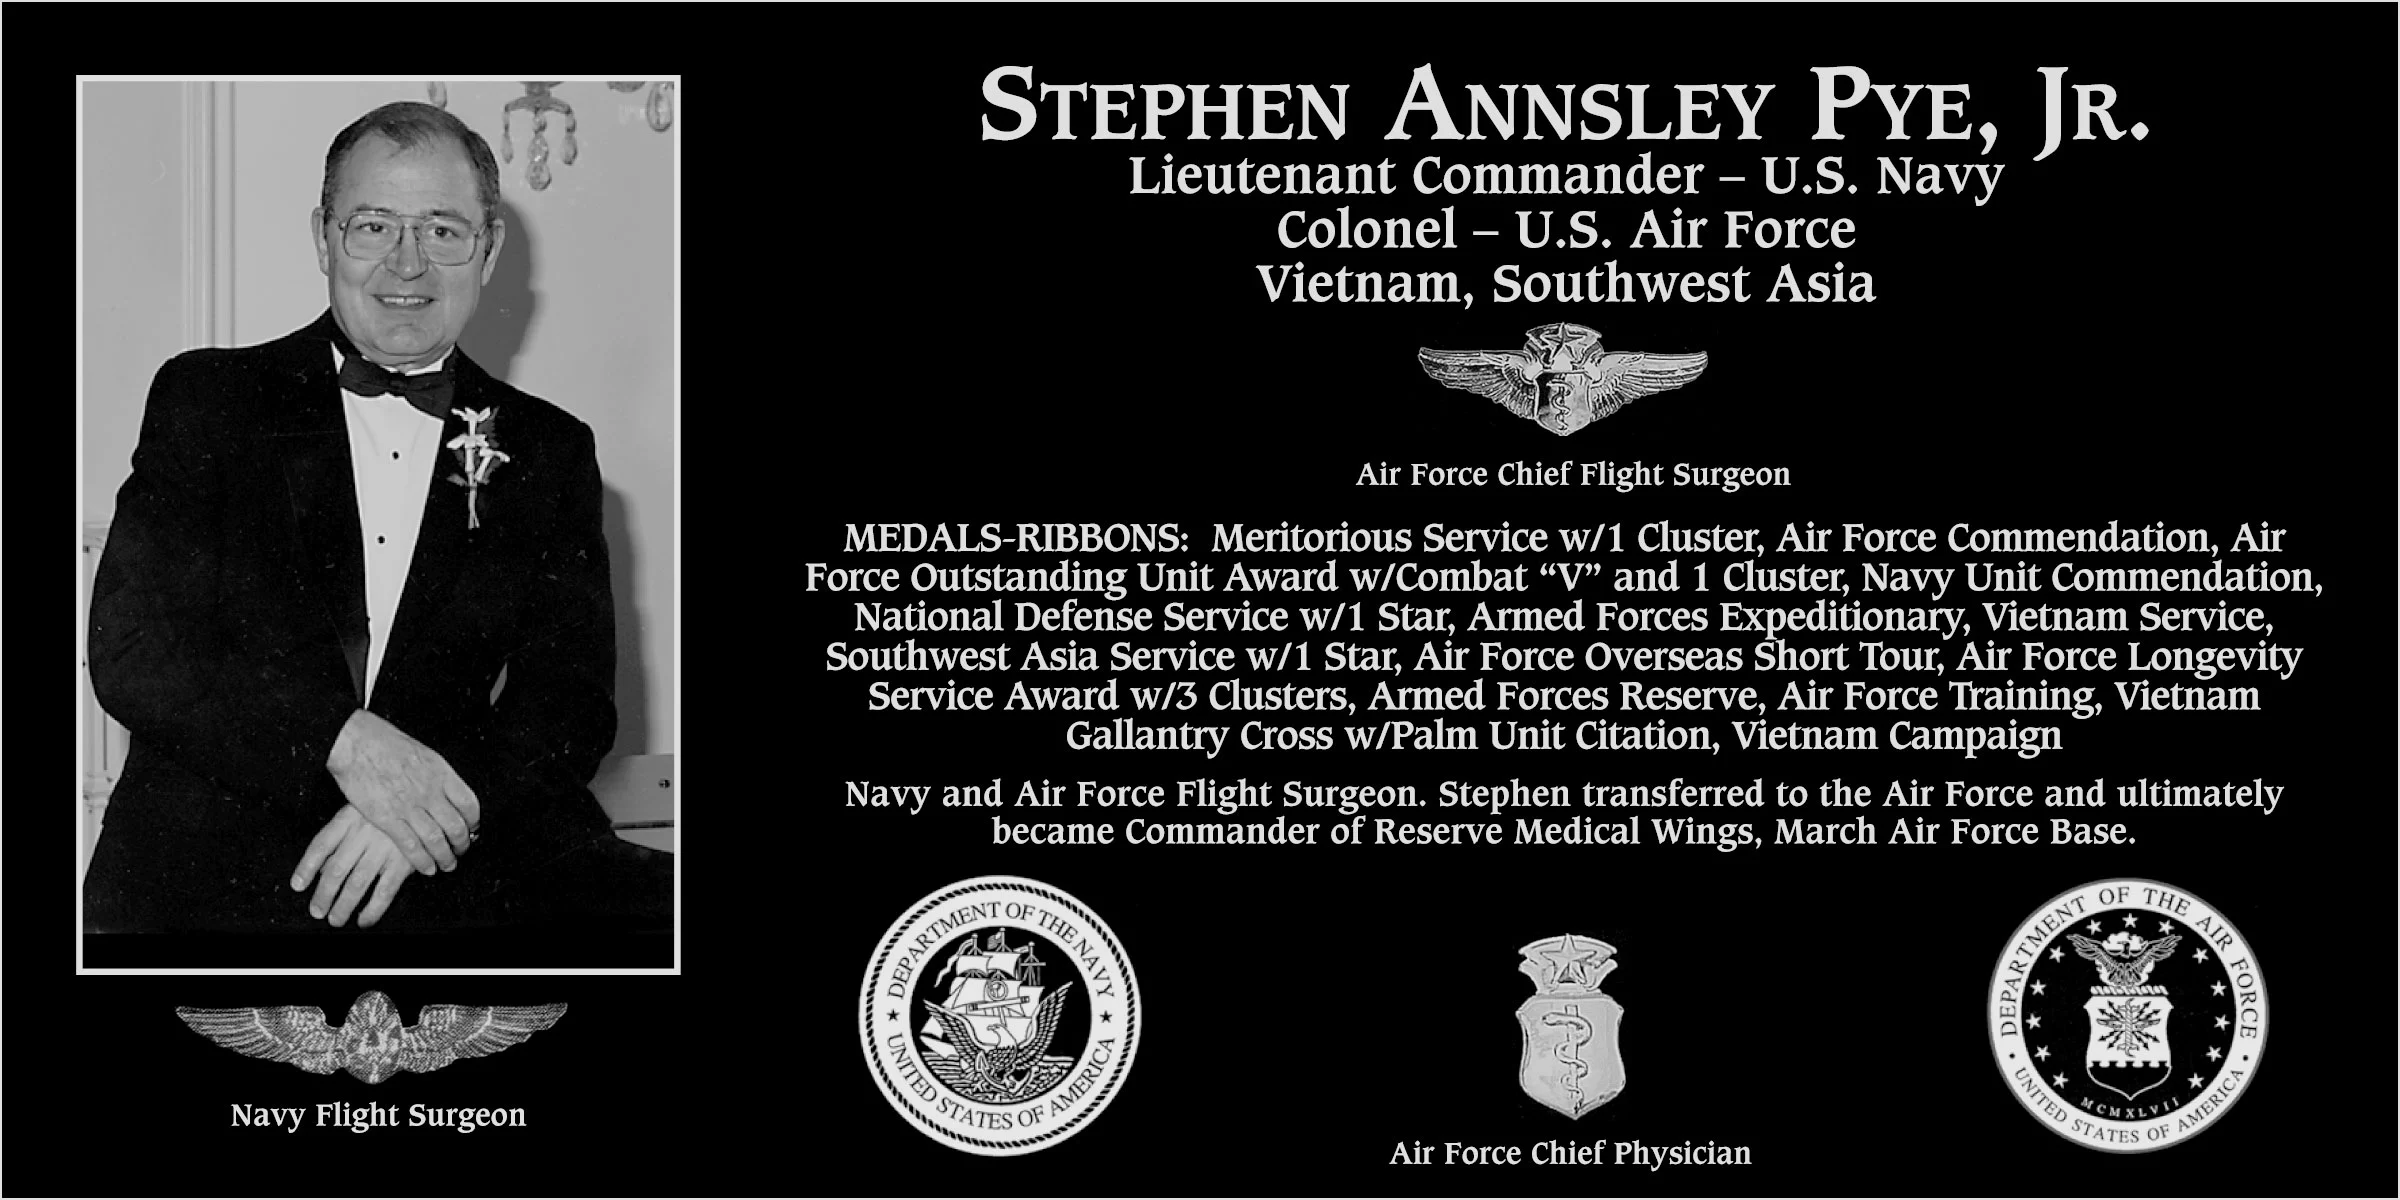 Stephen Annsley Pye, jr